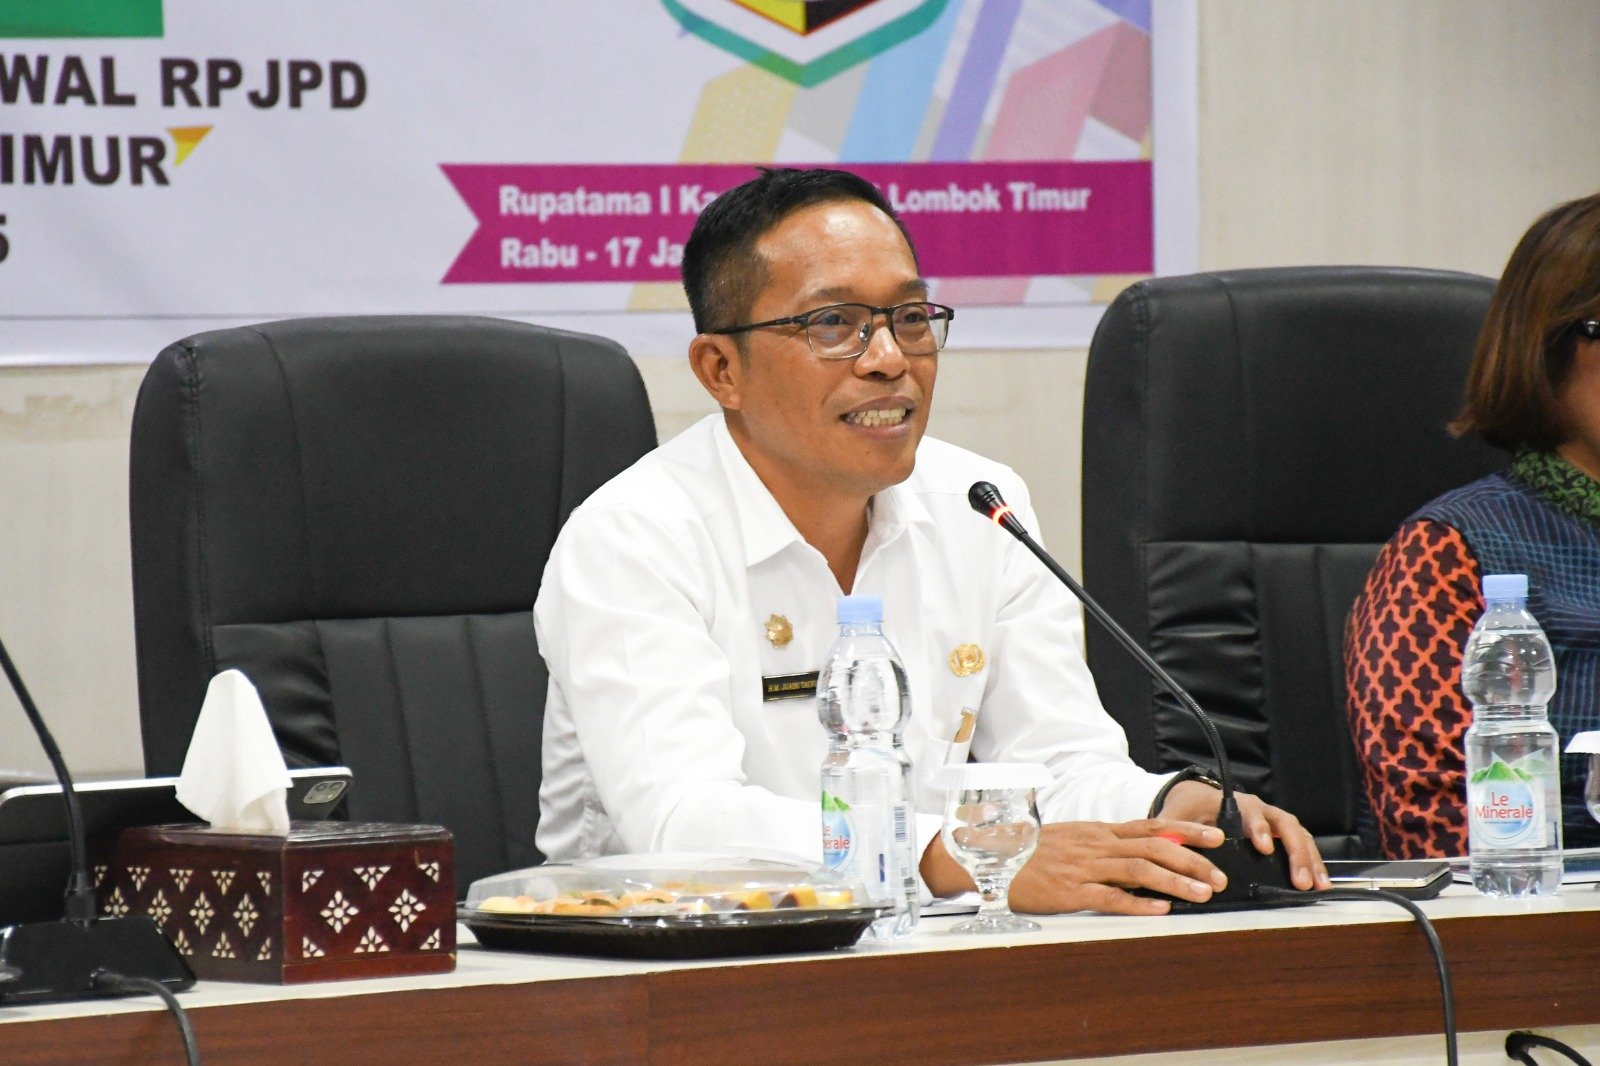 RPJPD sebagai Acuan Kepala Daerah